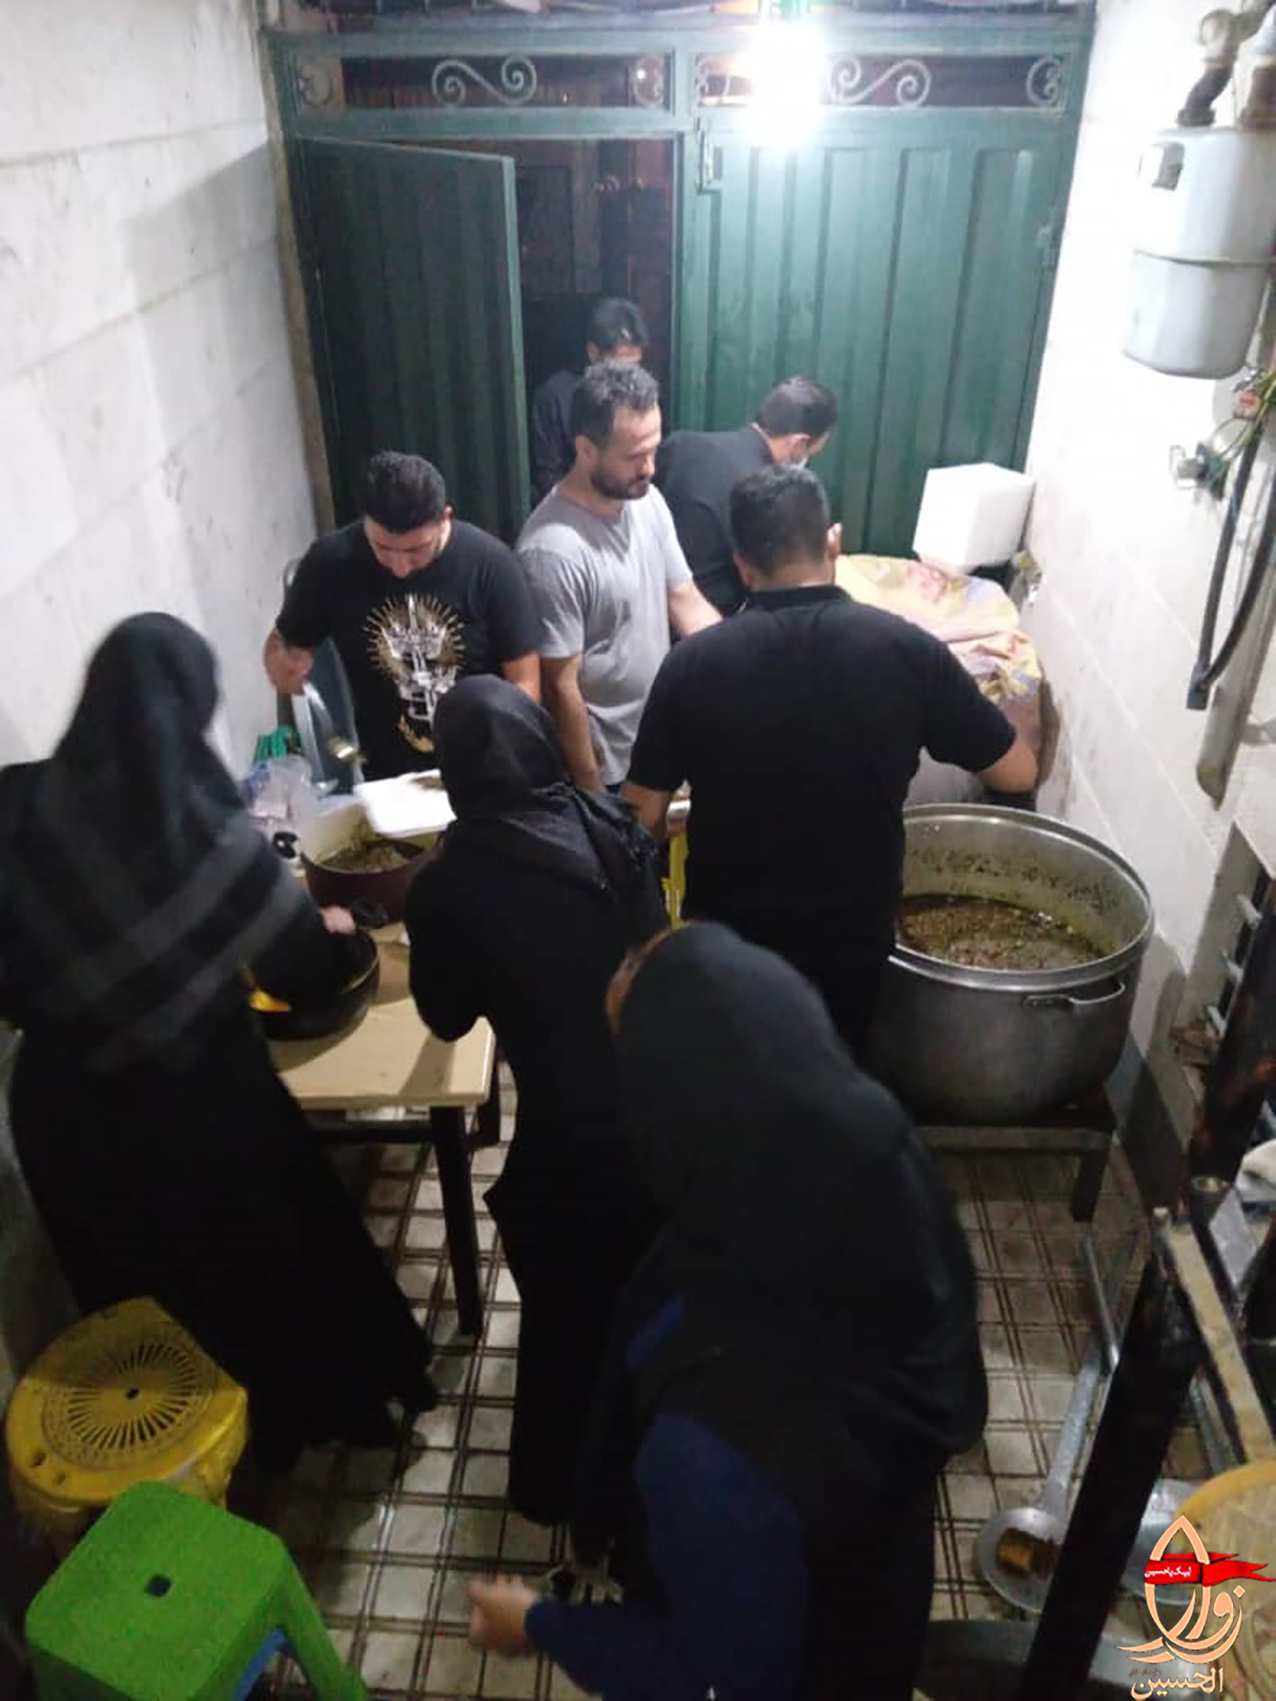 خادمین هیئت زوارالحسین در حال پخت و تهیه غذا برای مراسم دهه دوم محرم1401 هیئت زوارالحسین